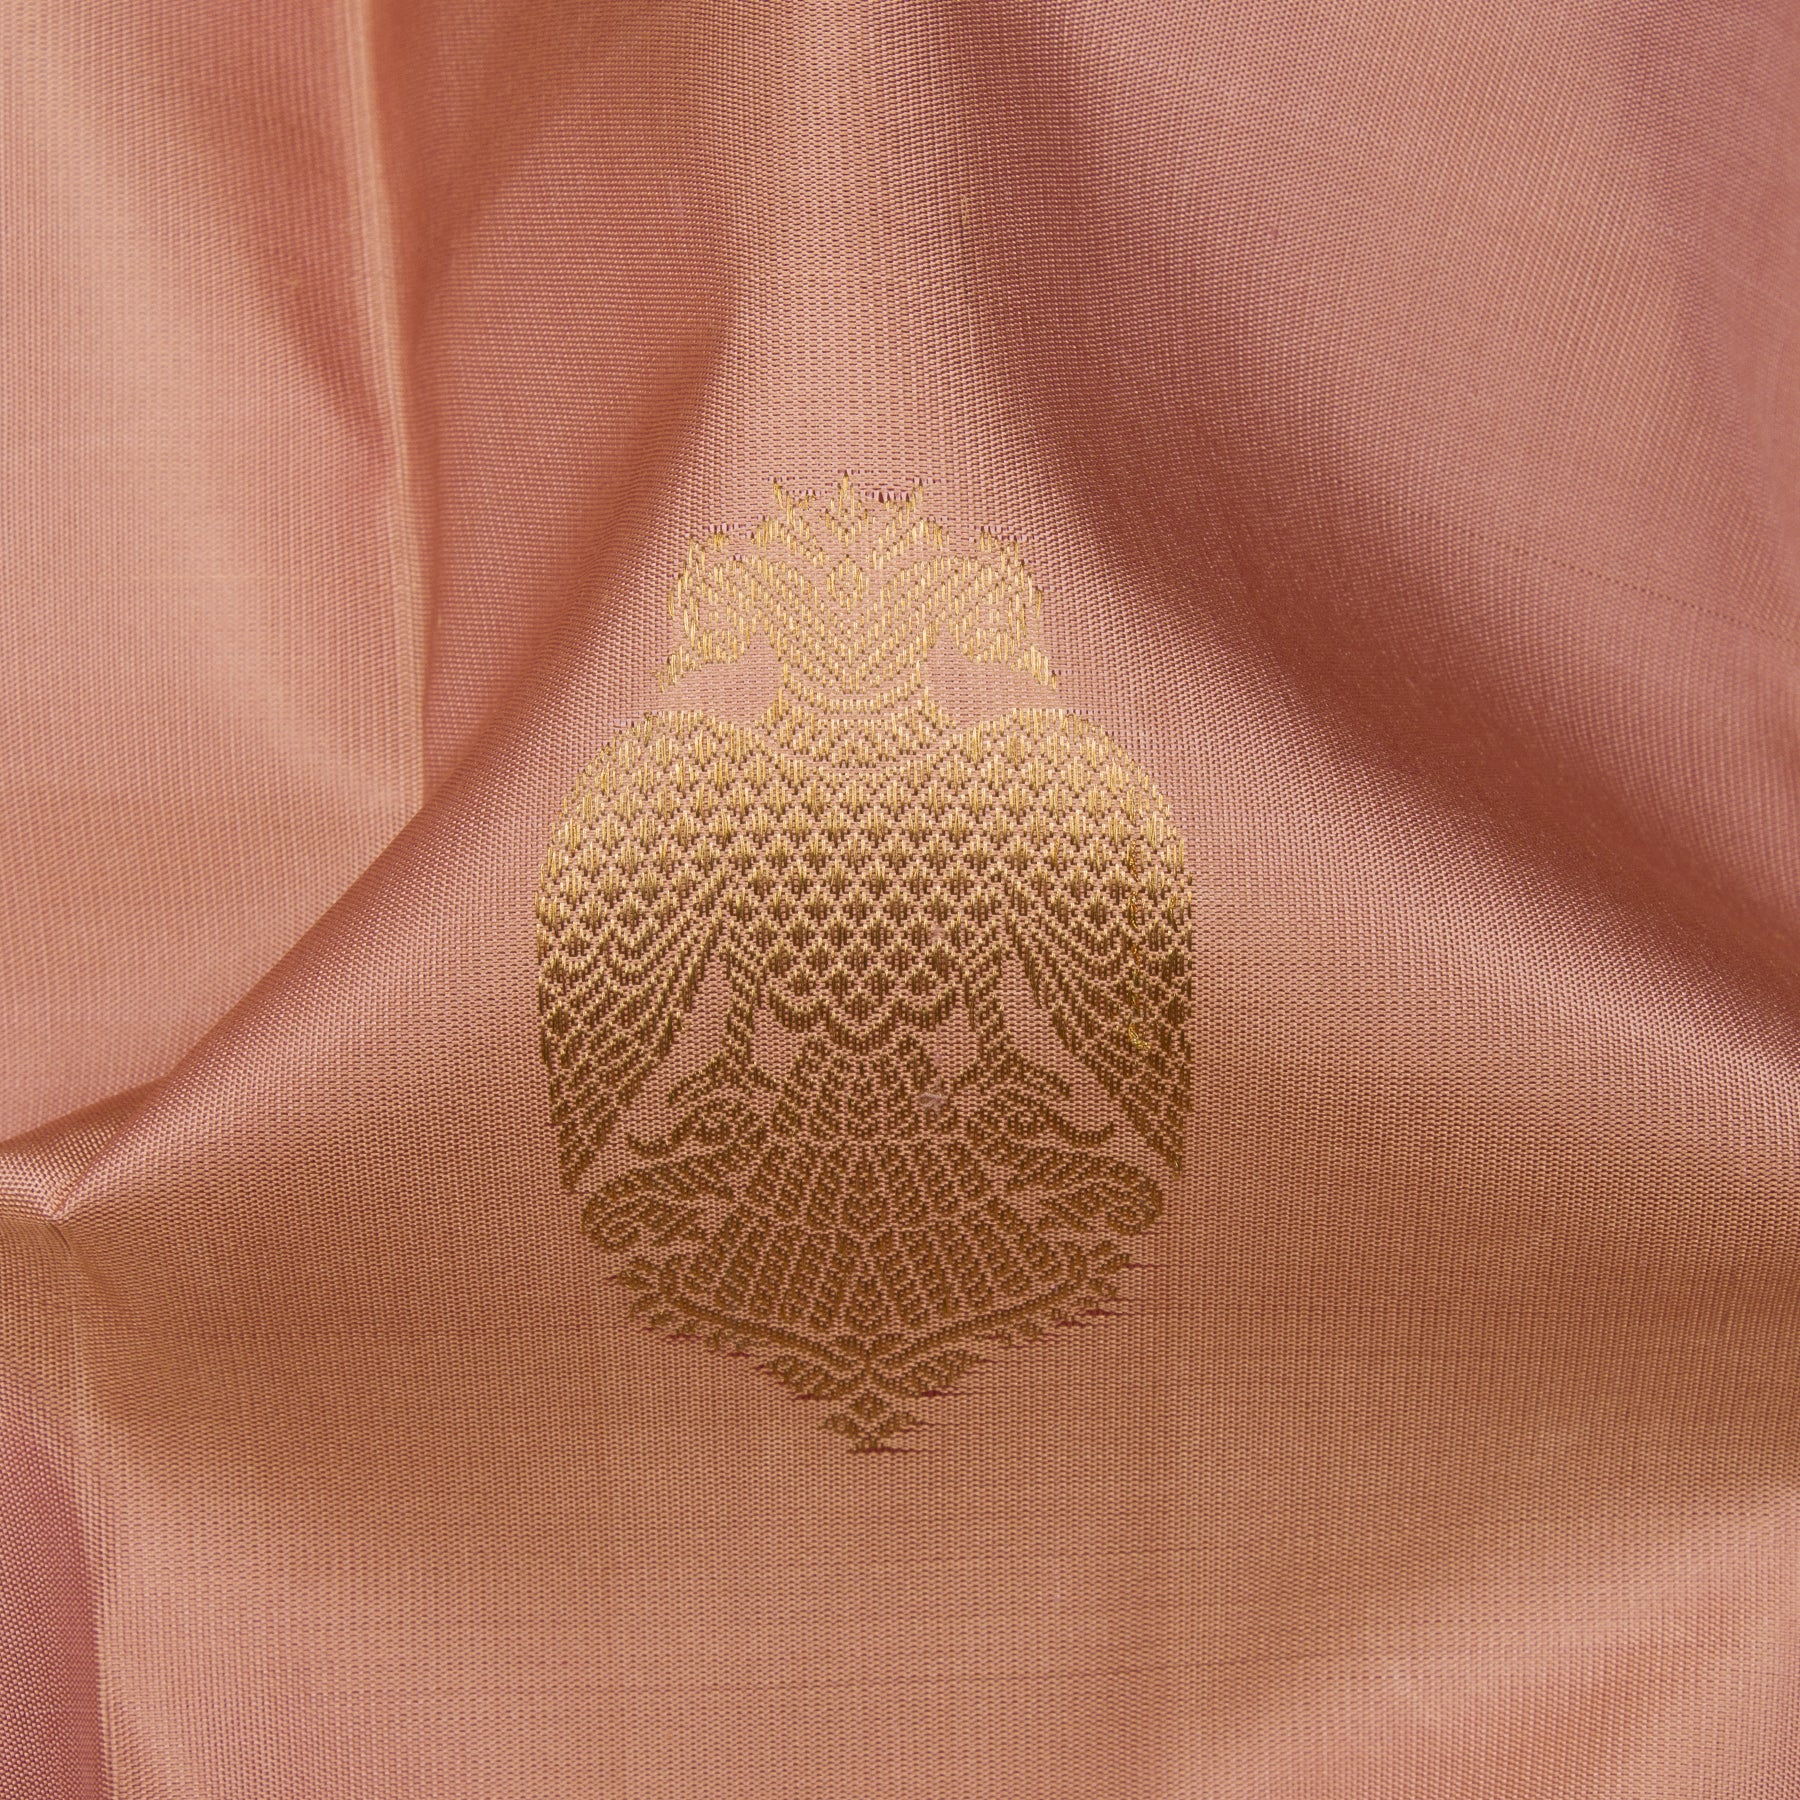 Kanakavalli Kanjivaram Silk Sari 24-595-HS001-00049 - Fabric View